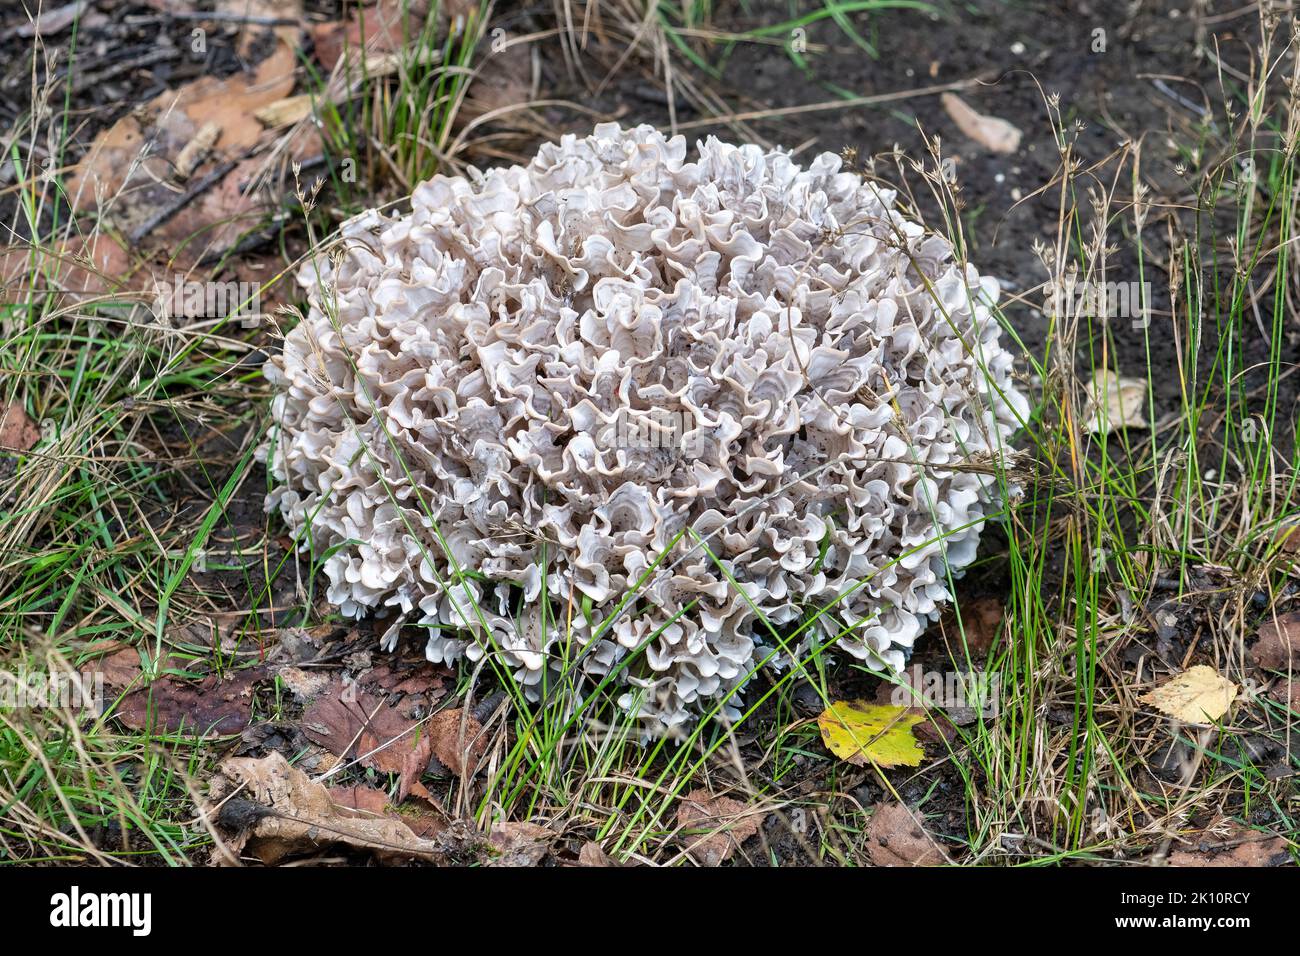 Fungo di cavolfiore di legno anche conosciuto come fungo del cervello (Sparassis crispa), una specie commestibile che cresce in terreno boscoso durante settembre o inizio autunno Foto Stock